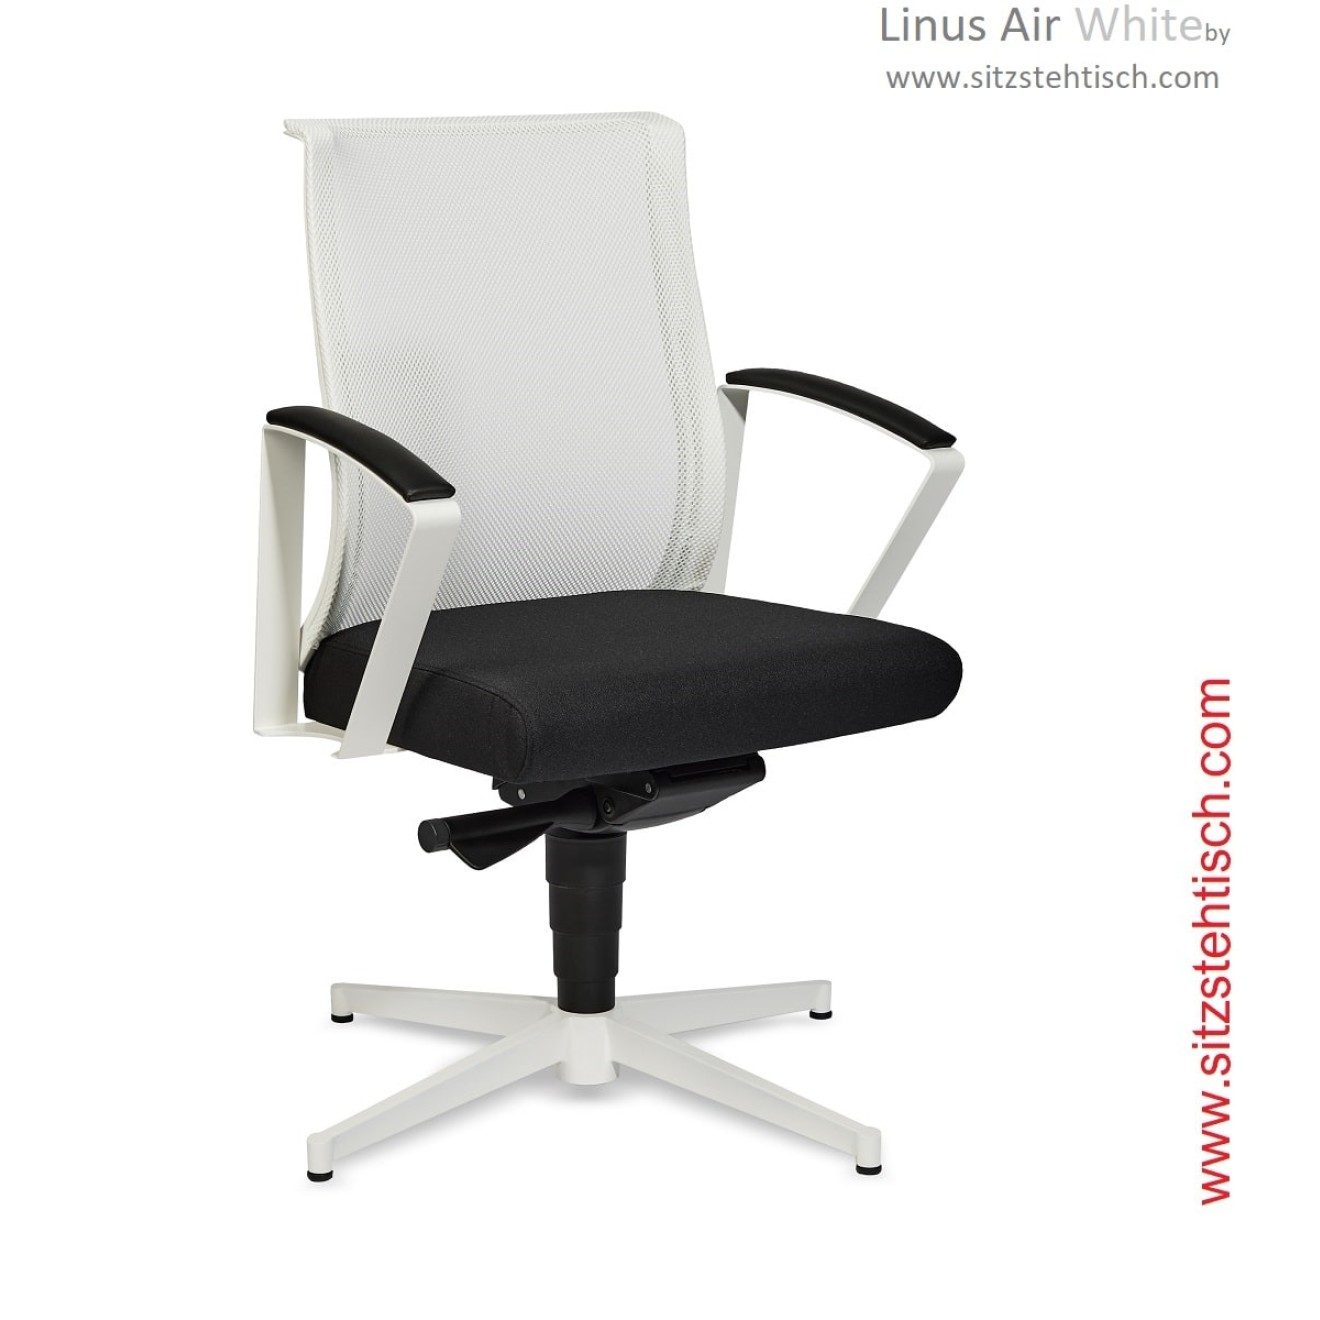 Konferenzstuhl Linus Air White - Synchronmechanik mit automatischer Gewichtsregulierung, feste Designmetallarmlehne mit Polsterung - 5 Jahre Garantie - Westaro 2800